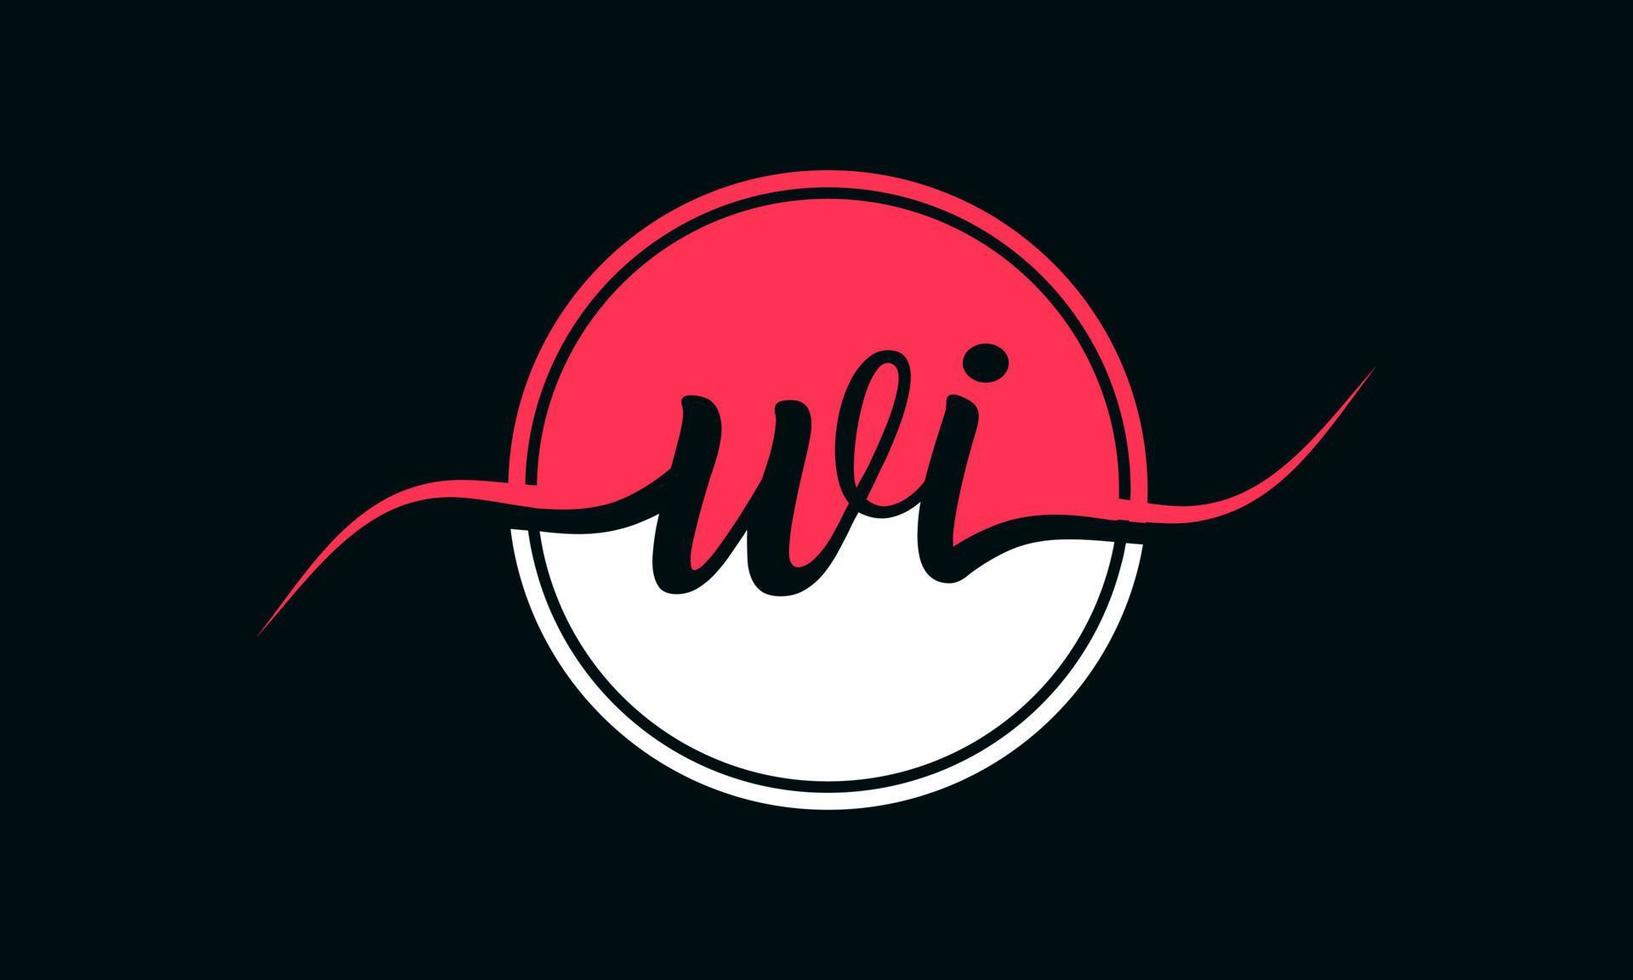 logo initial de la lettre wi avec cercle intérieur de couleur blanche et rose. vecteur professionnel.